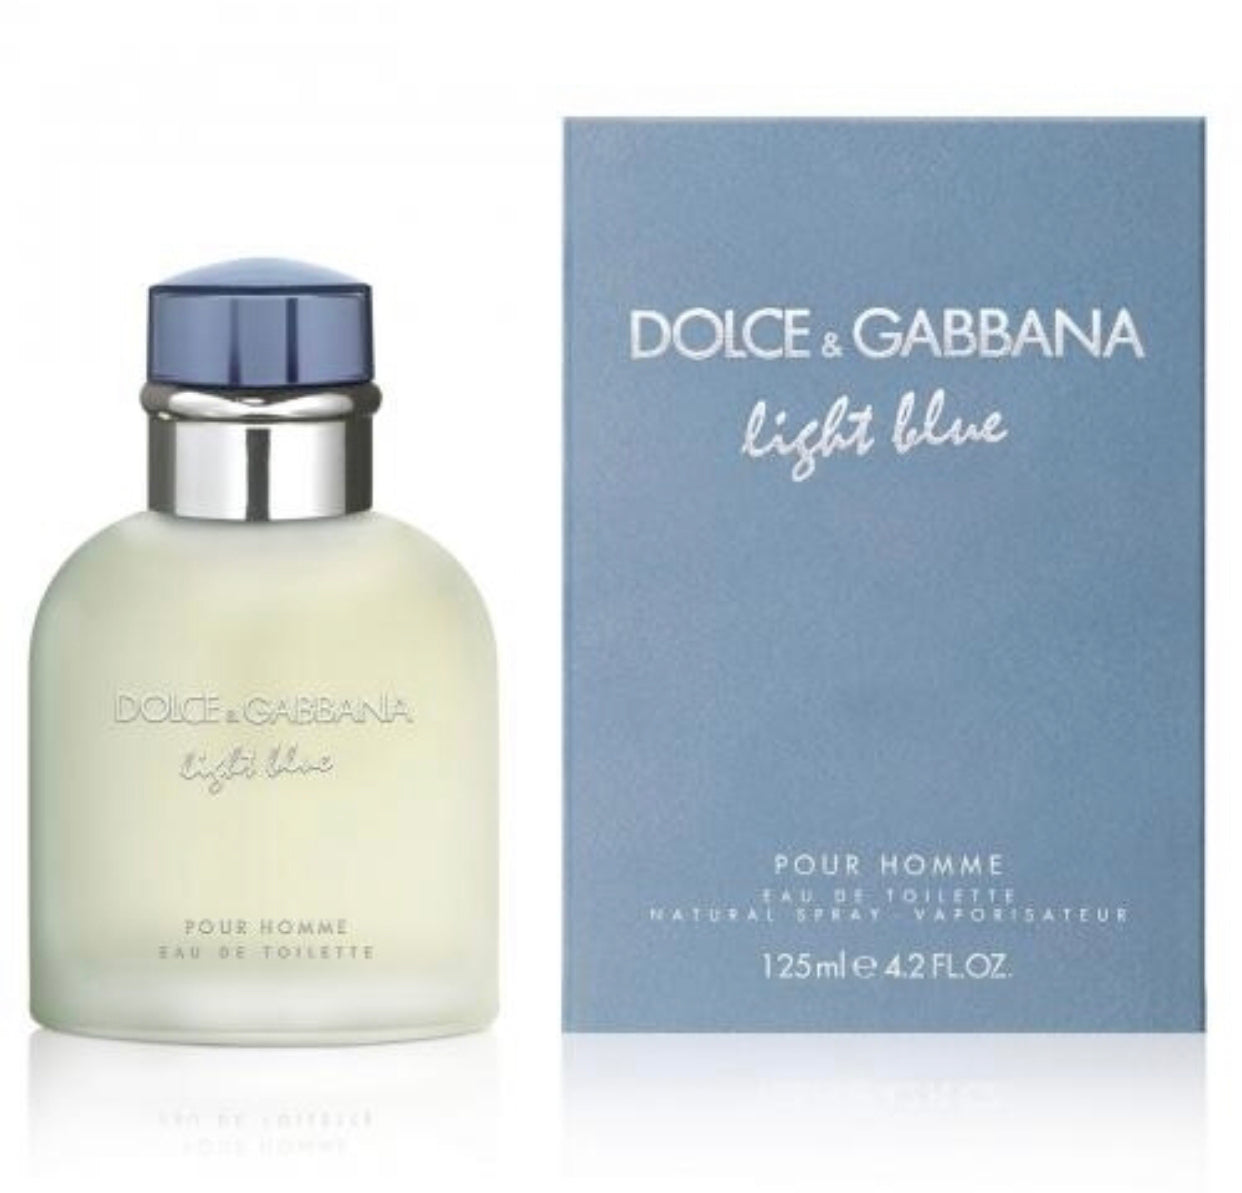 DOLCE & GABBANA ( Light Blue )